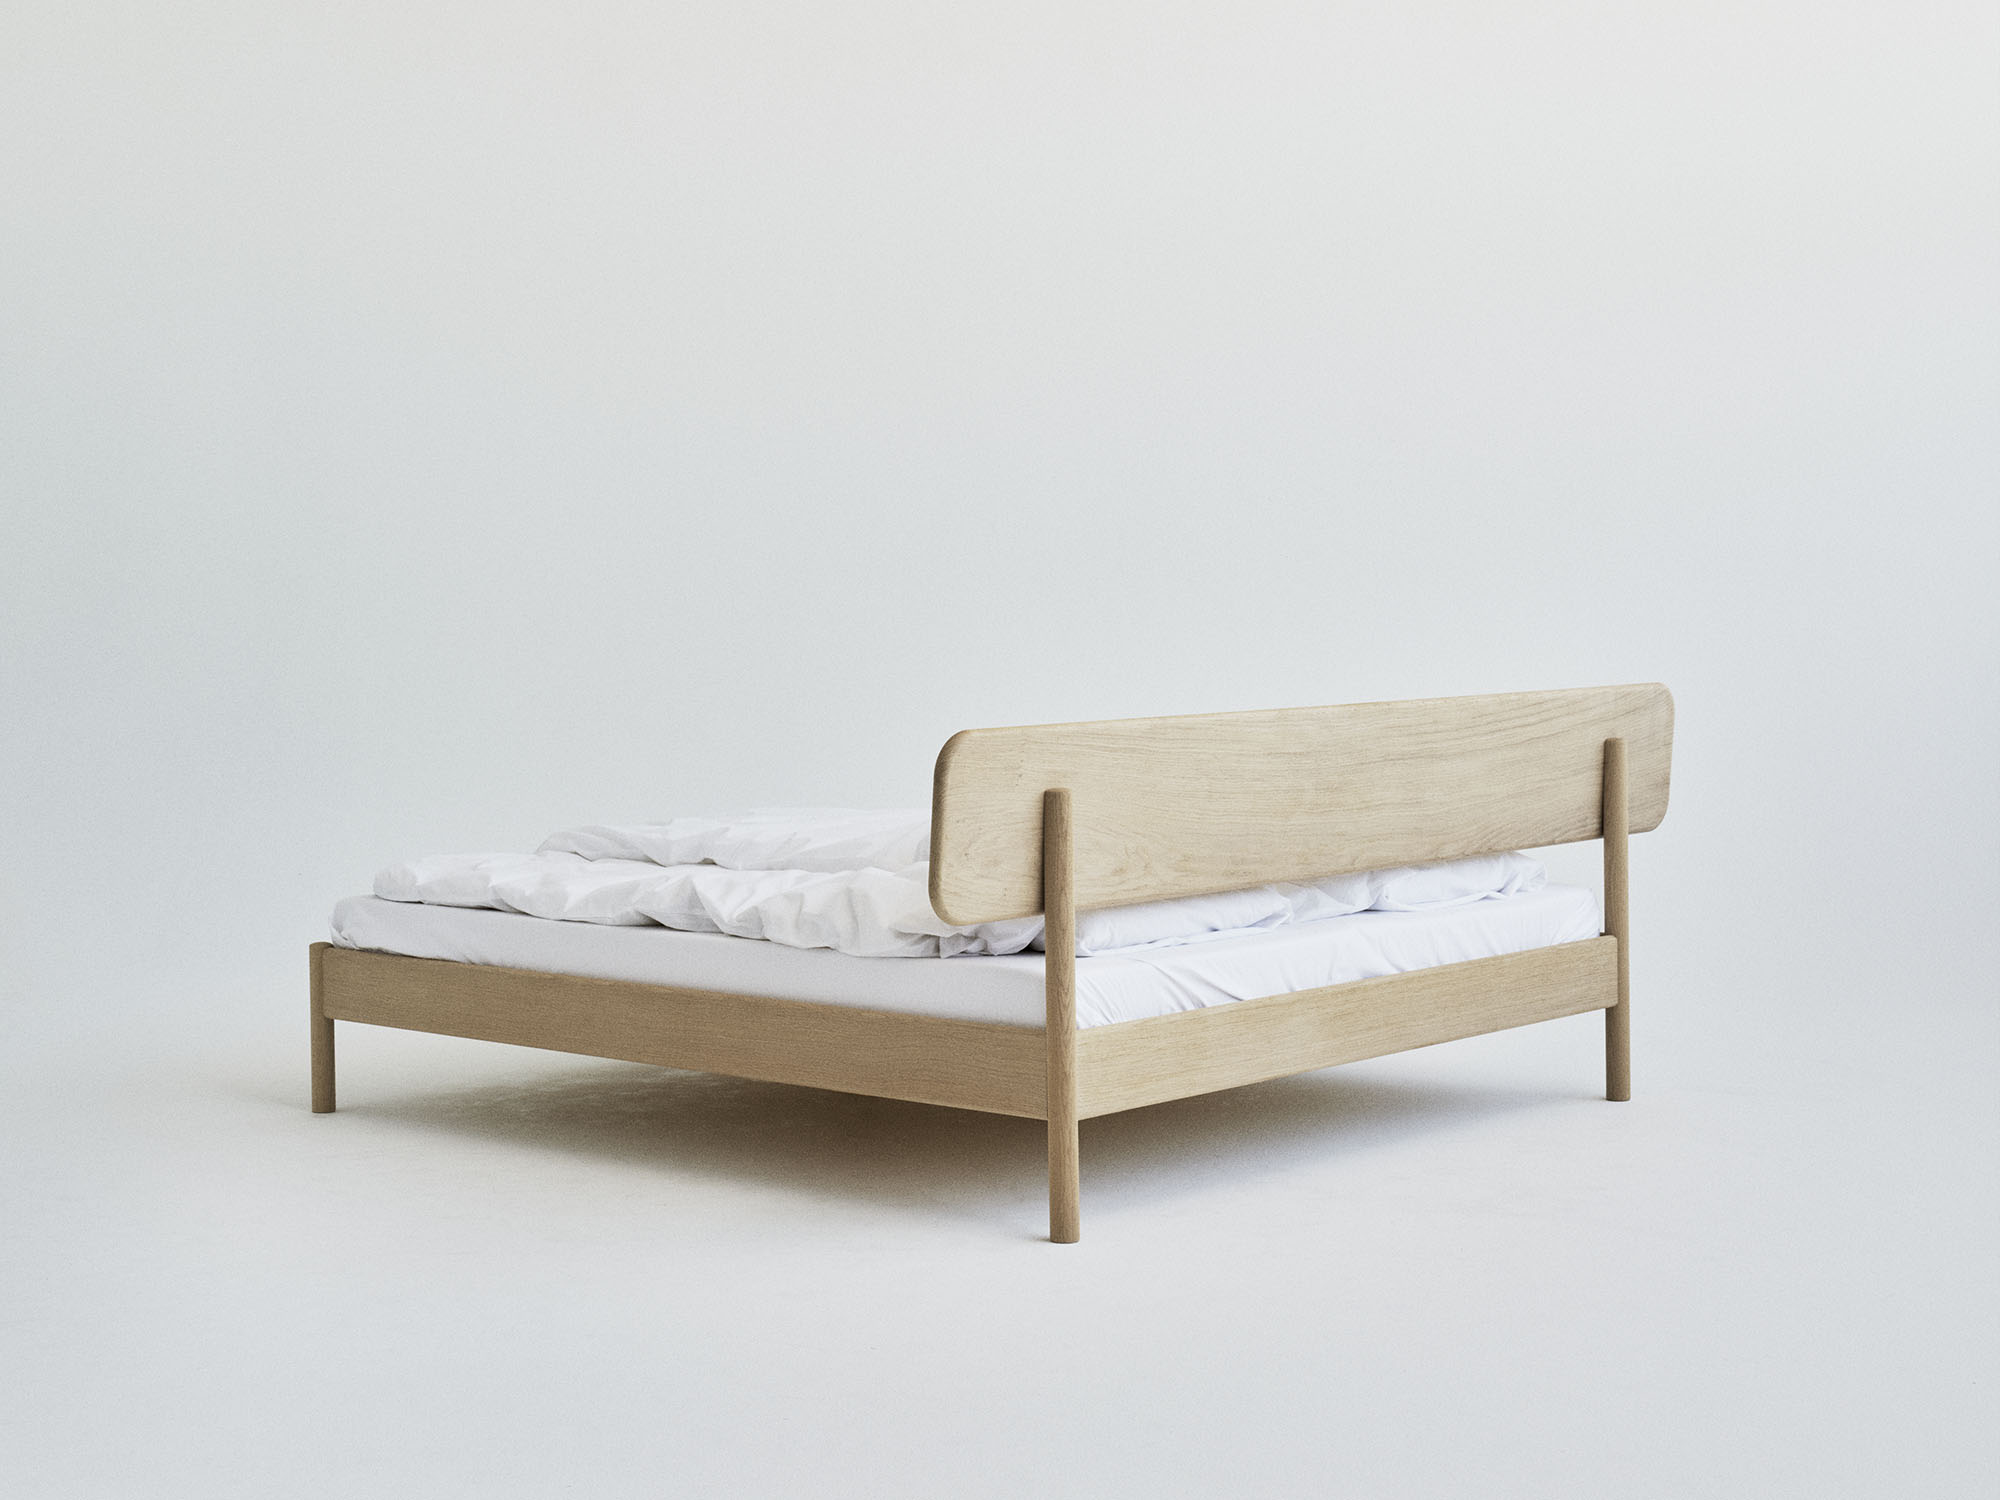 RYE Alken bed frame in soaped solid oak - back view pack shot